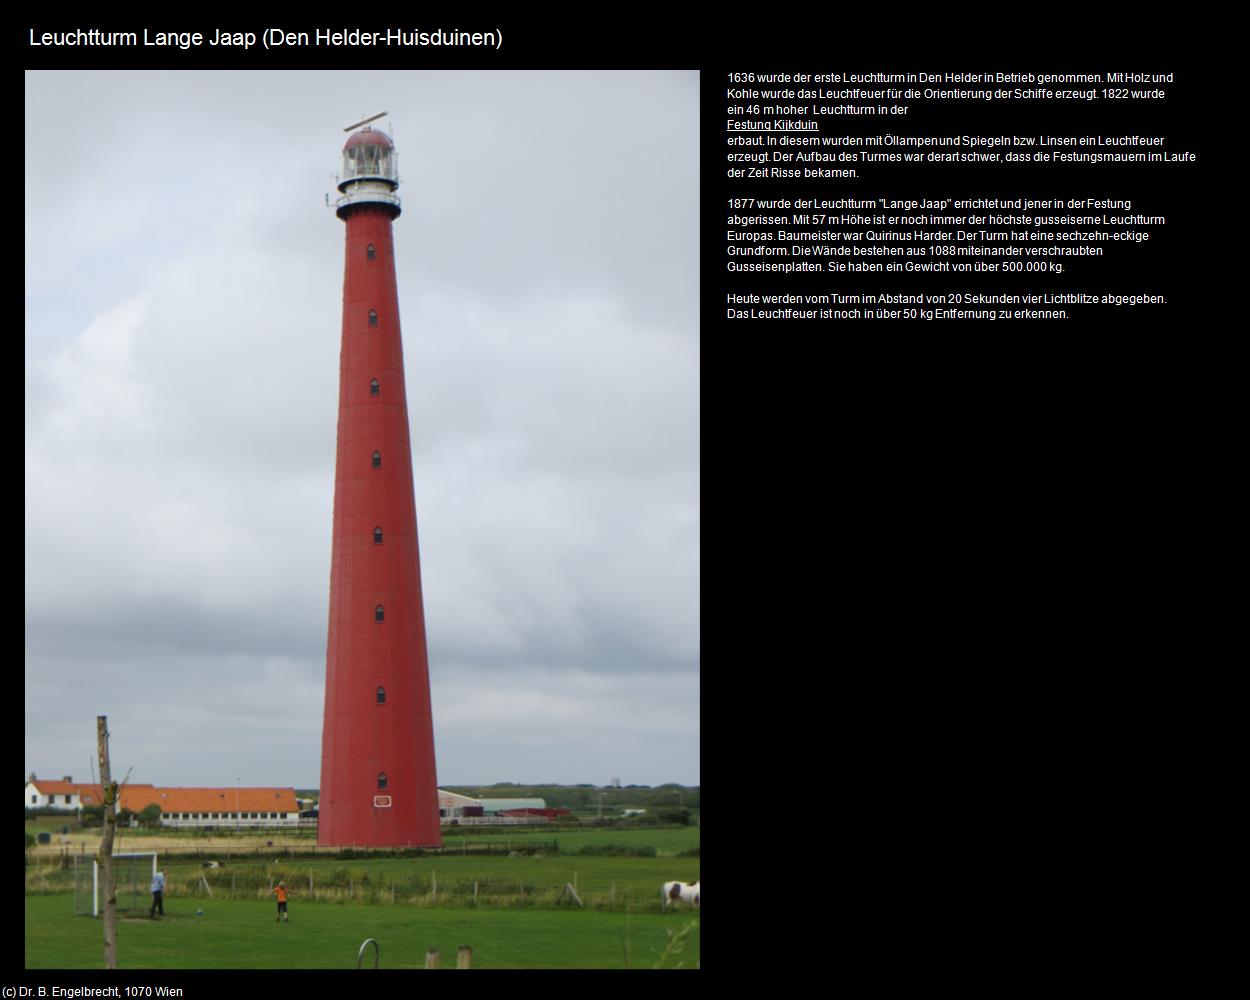 Leuchtturm Lange Jaap (Huisduinen) (Den Helder) in Kulturatlas-NIEDERLANDE(c)B.Engelbrecht